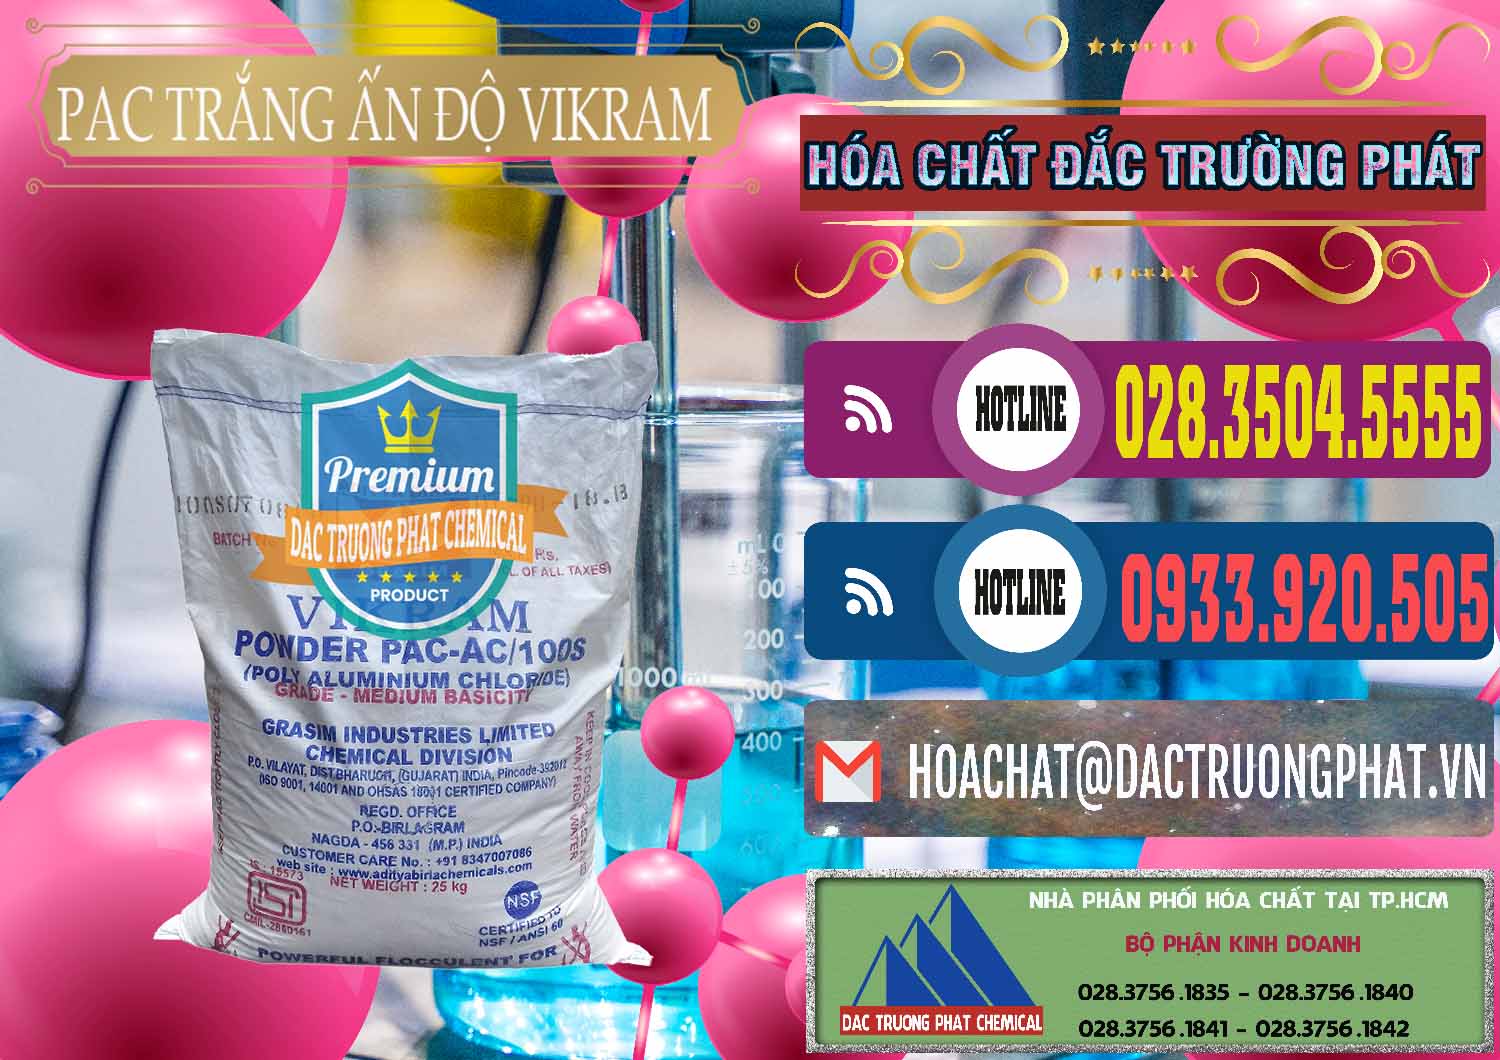 Cty chuyên bán - cung ứng PAC - Polyaluminium Chloride Ấn Độ India Vikram - 0120 - Nhà phân phối ( cung cấp ) hóa chất tại TP.HCM - muabanhoachat.com.vn